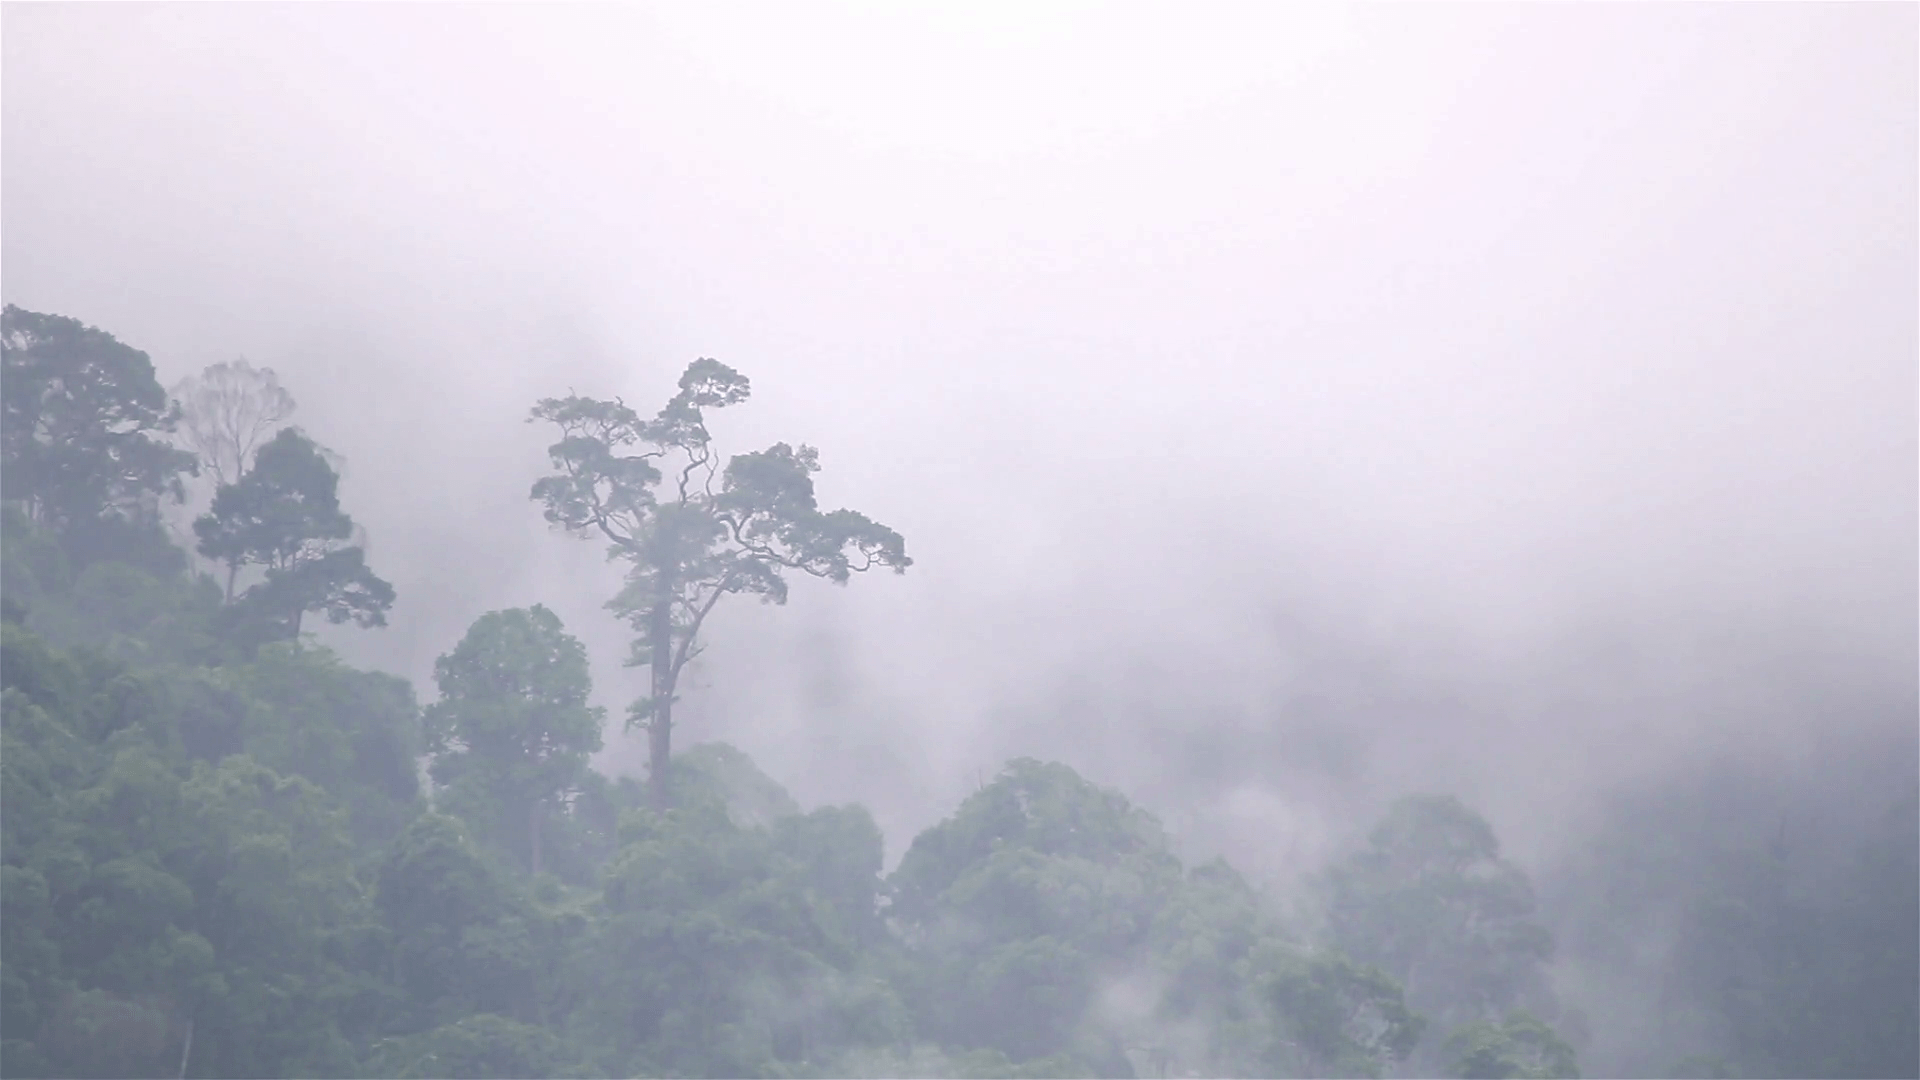 Morning fog in dense tropical rainforest, Misty mountain forest fog